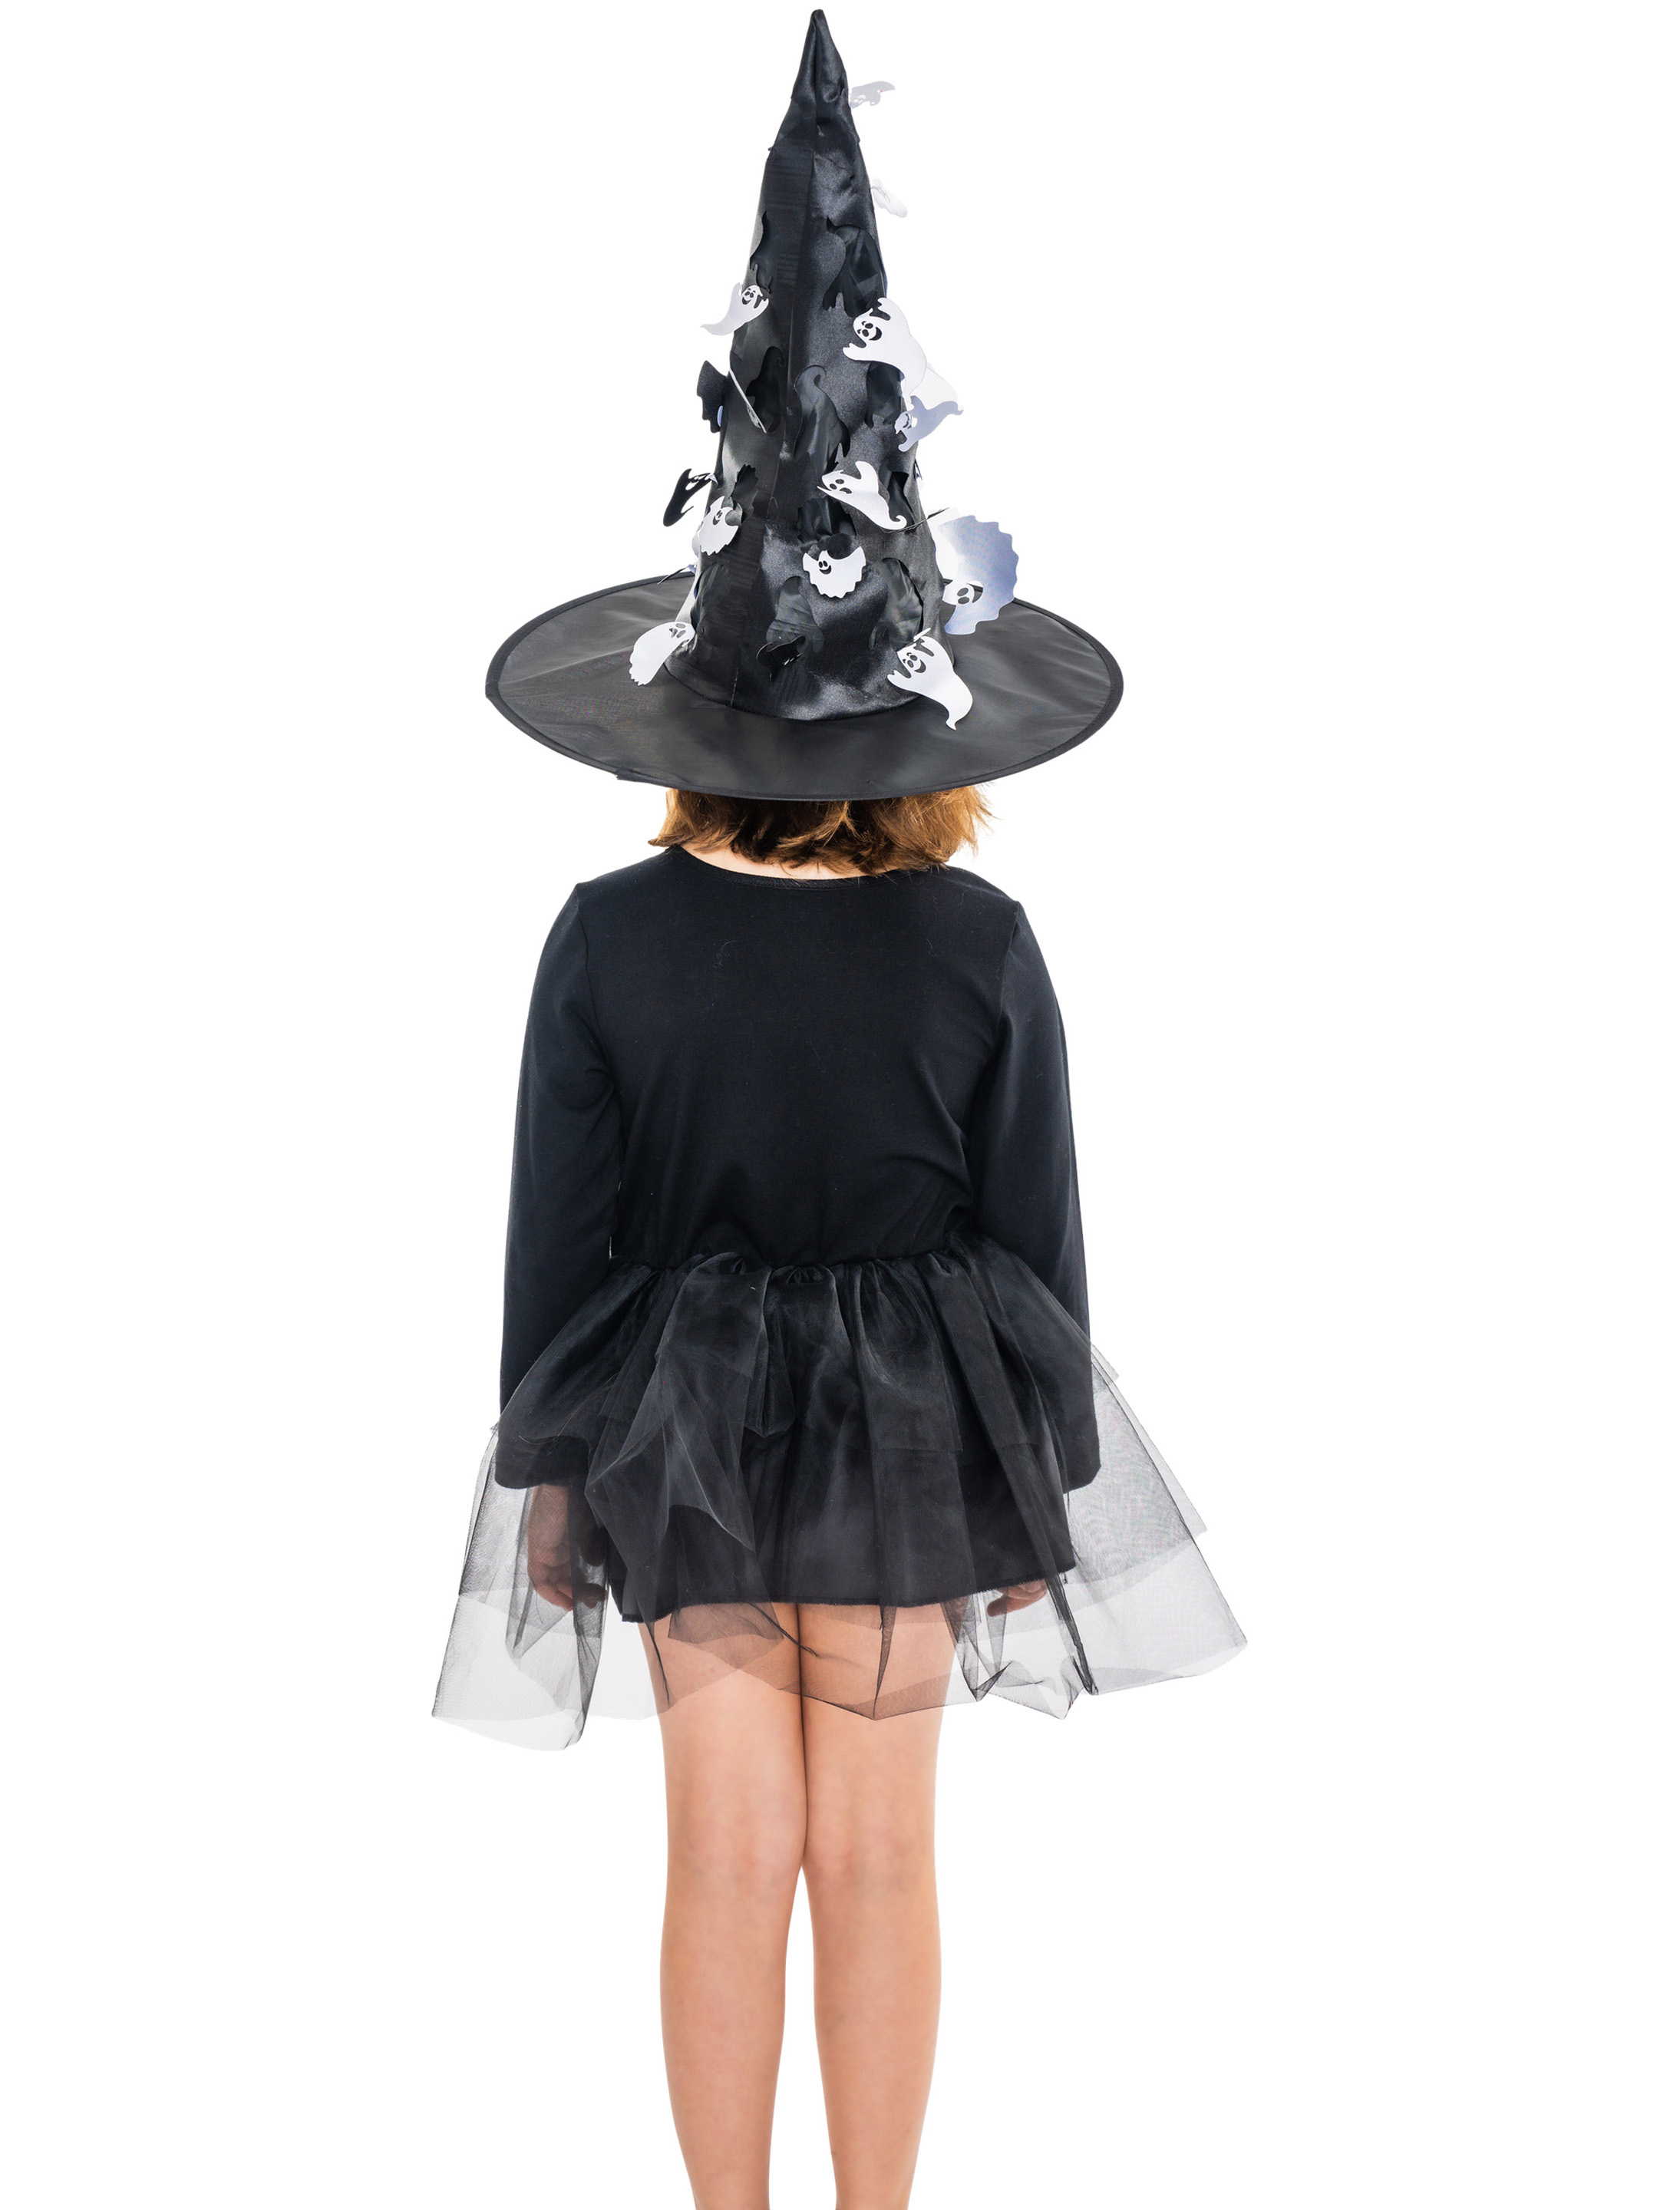 Kleid Hexe Kinder schwarz 134